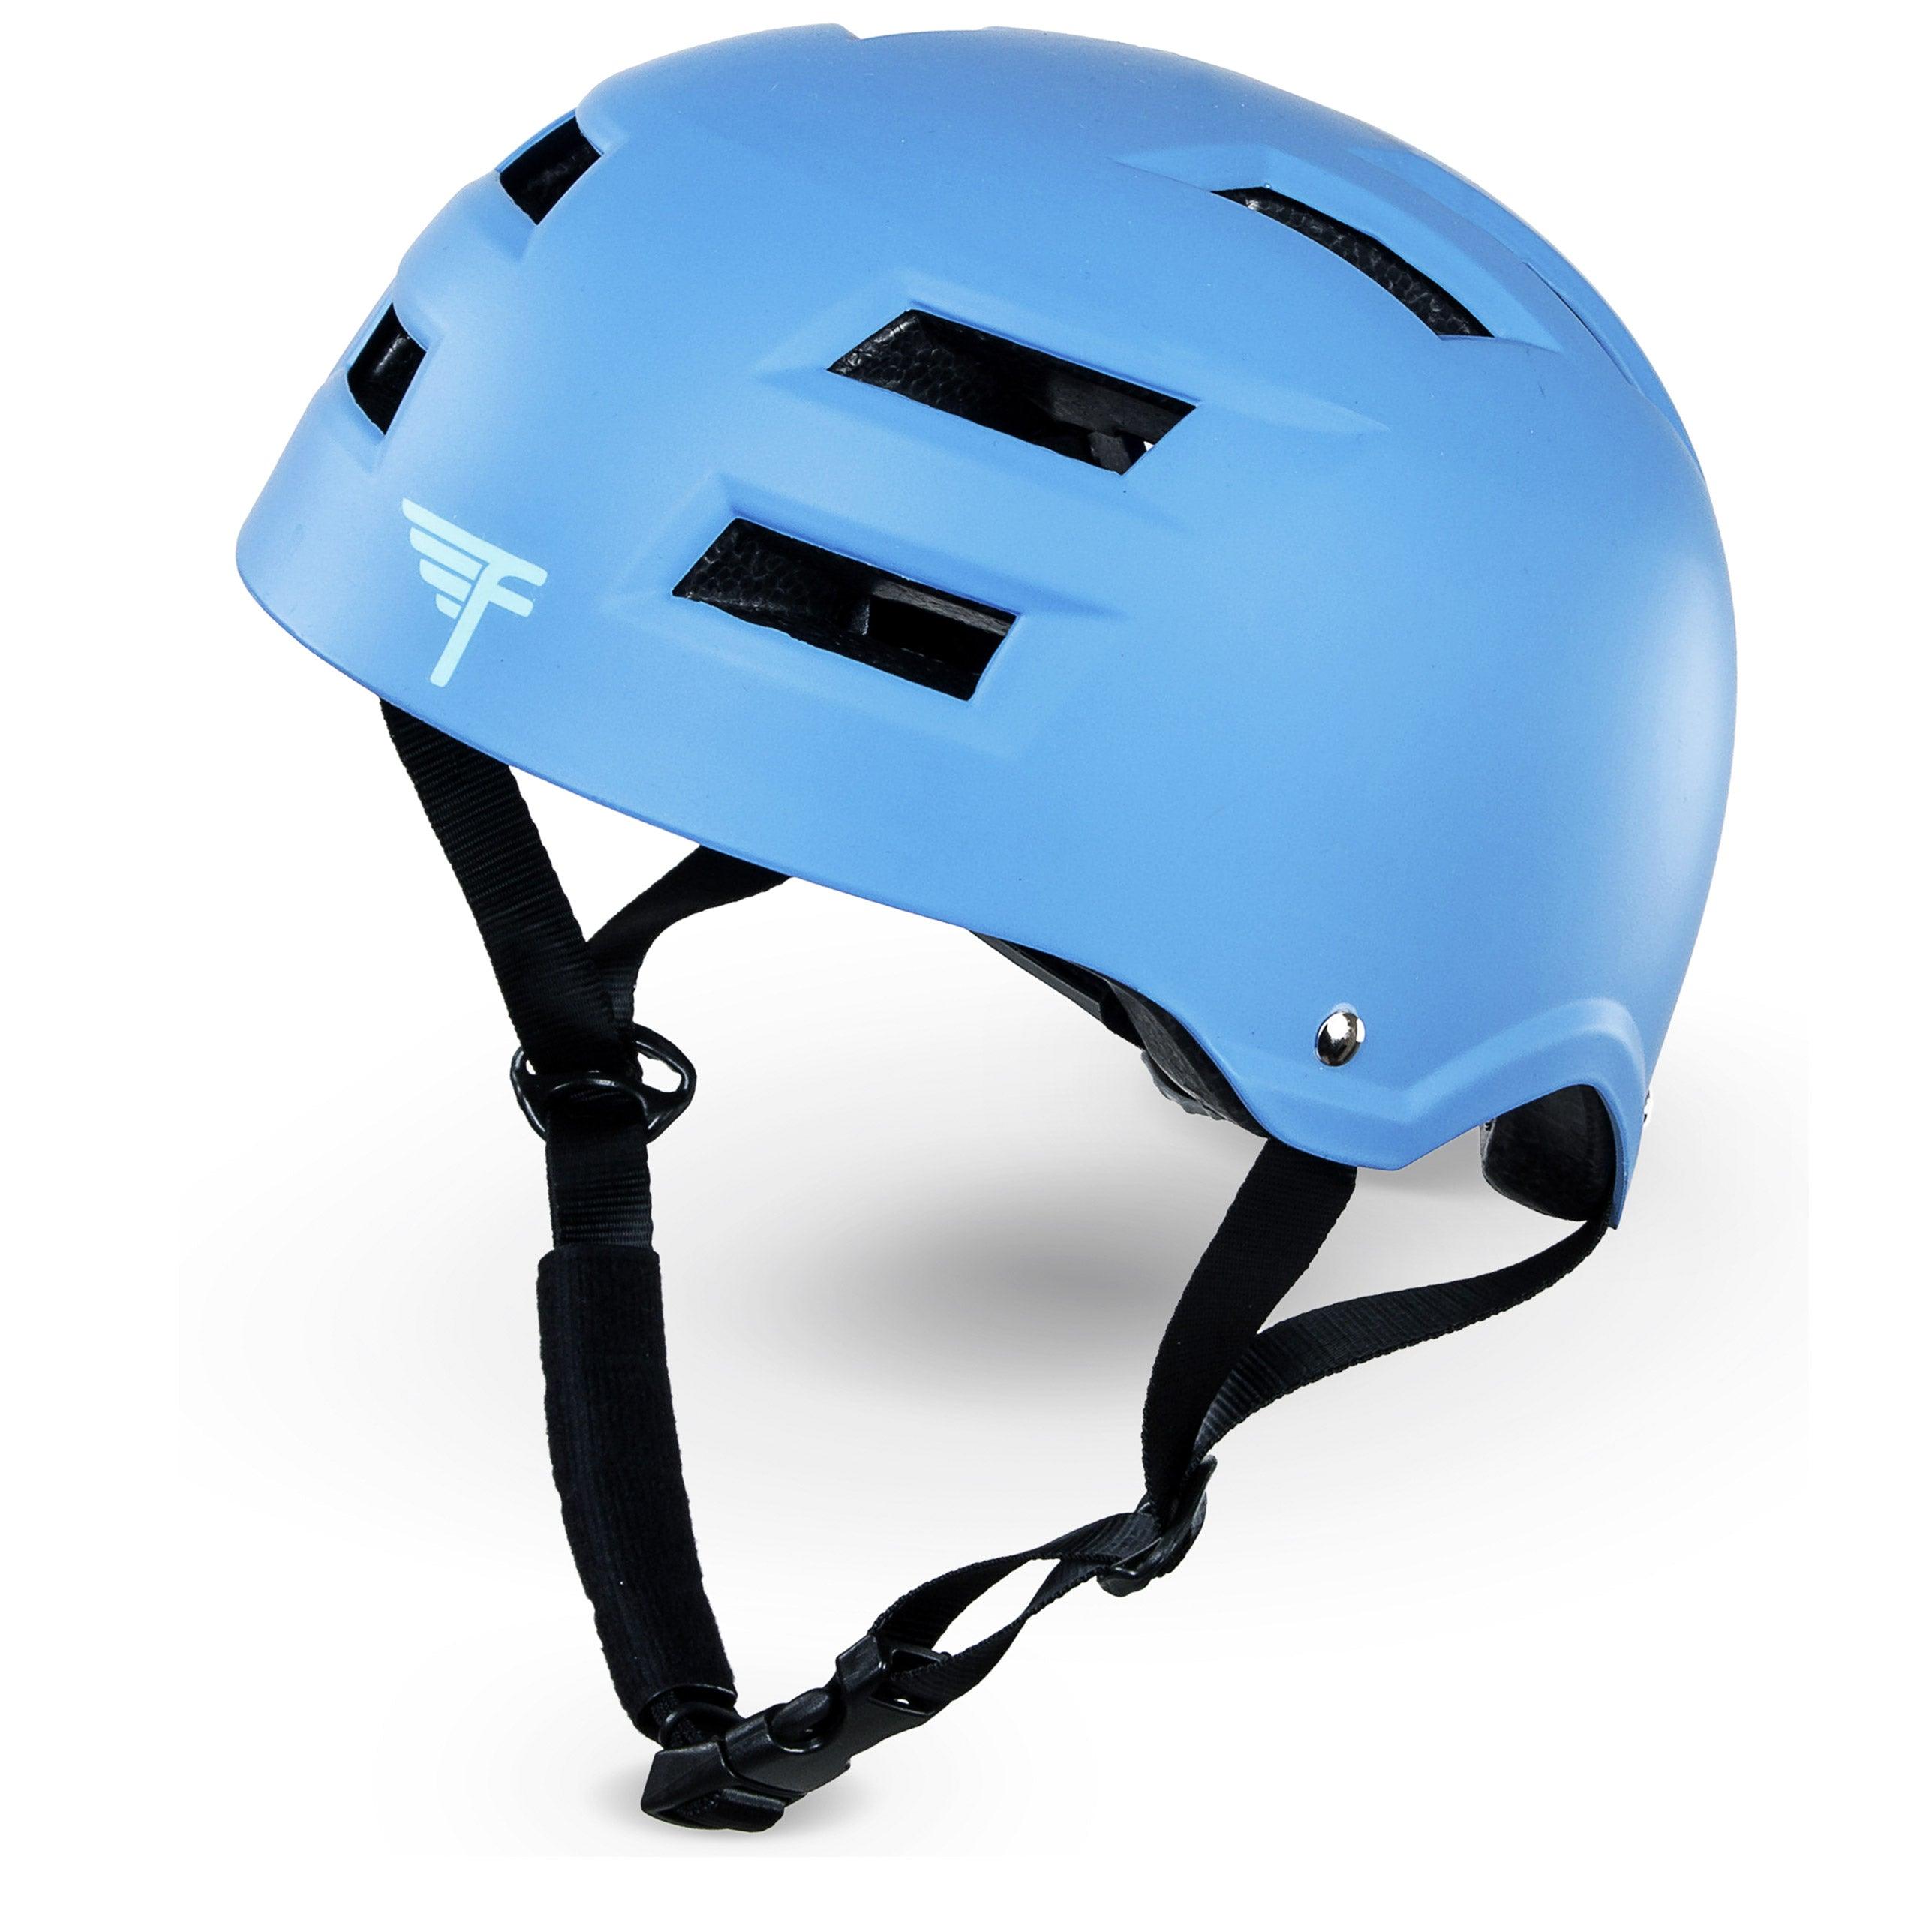 CSPC Certified Multi-Sport Adjustable Helmet - Flybar1